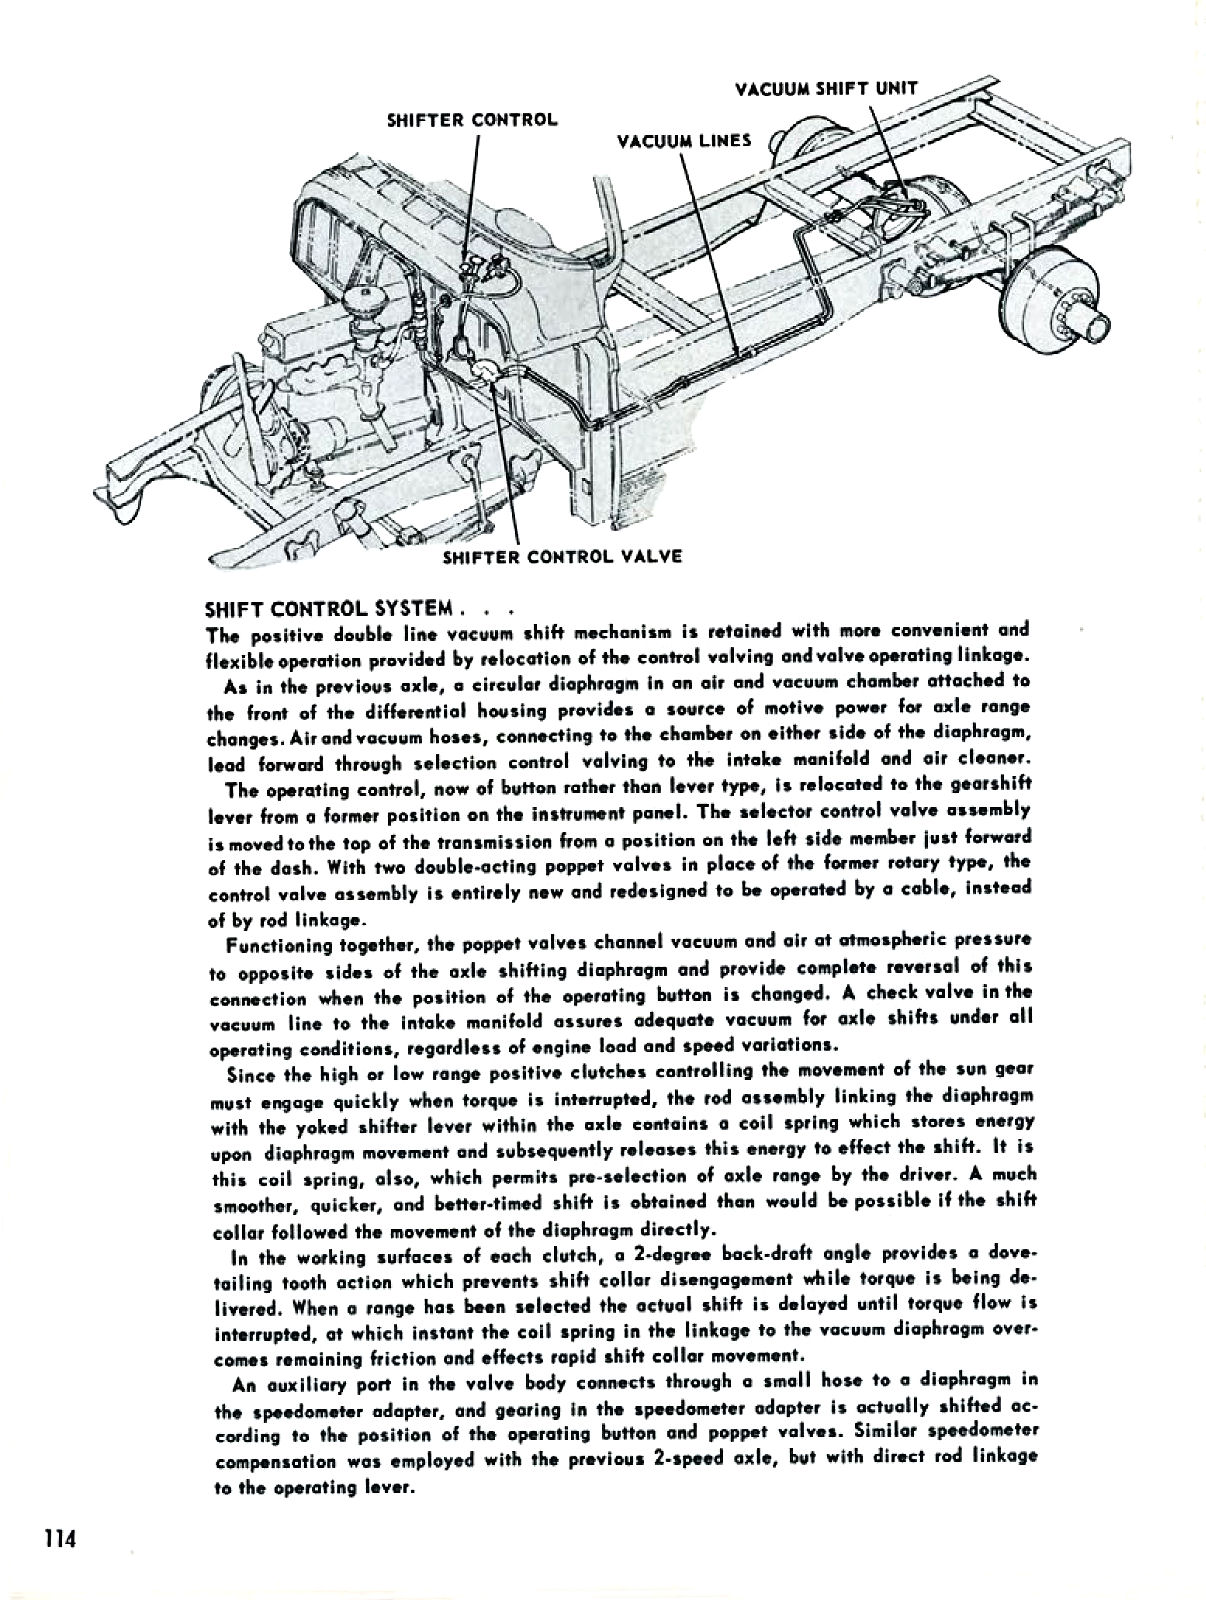 1955_Chevrolet_Truck_Engineering_Features-114